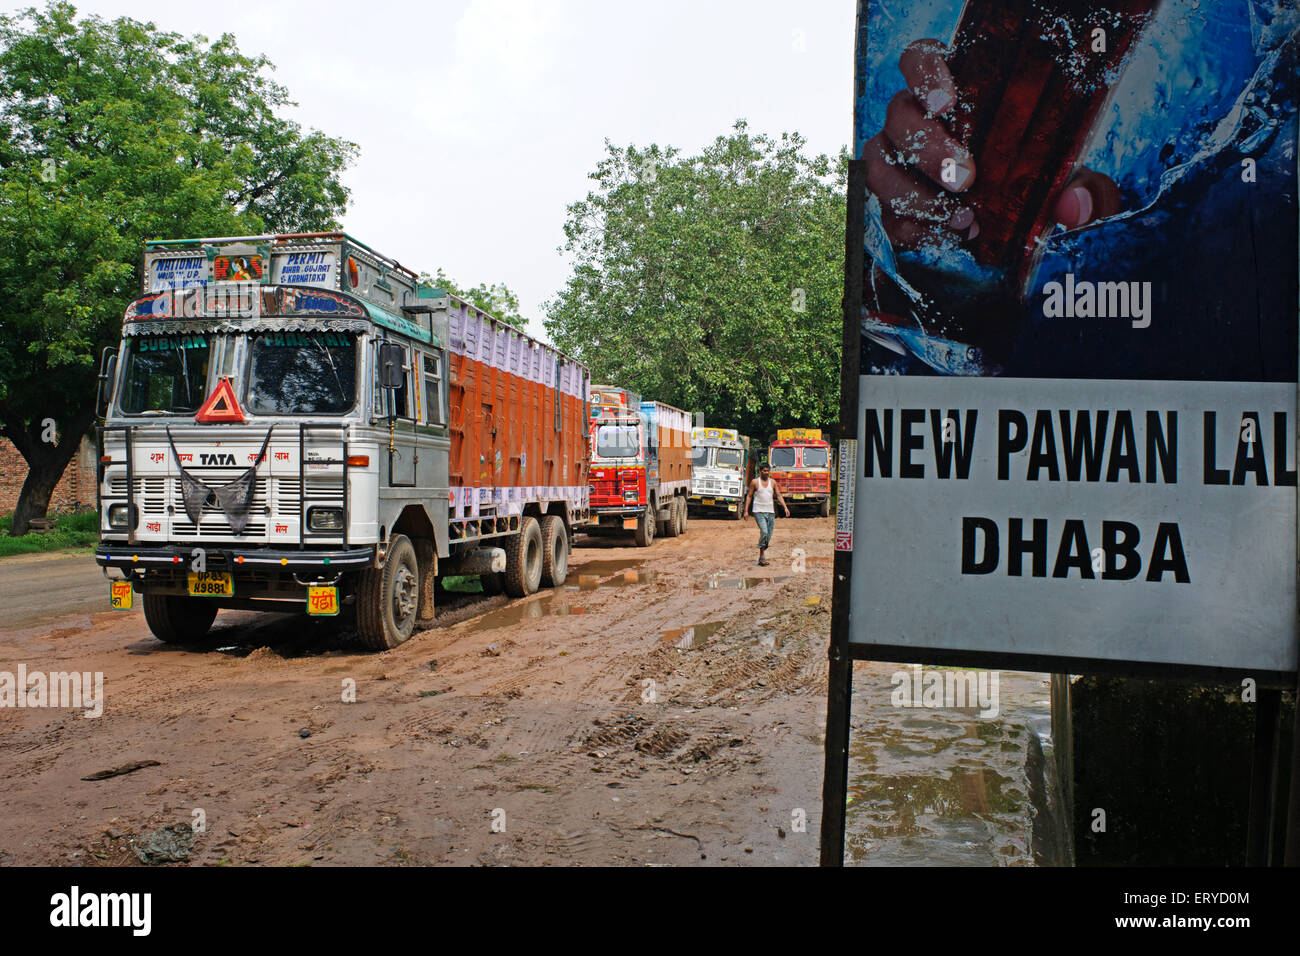 LKW-Parkplatz stehen, neue Bauer lal dhaba; Straßenrand Restaurant, Uttar Pradesh; Indien, asien Stockfoto